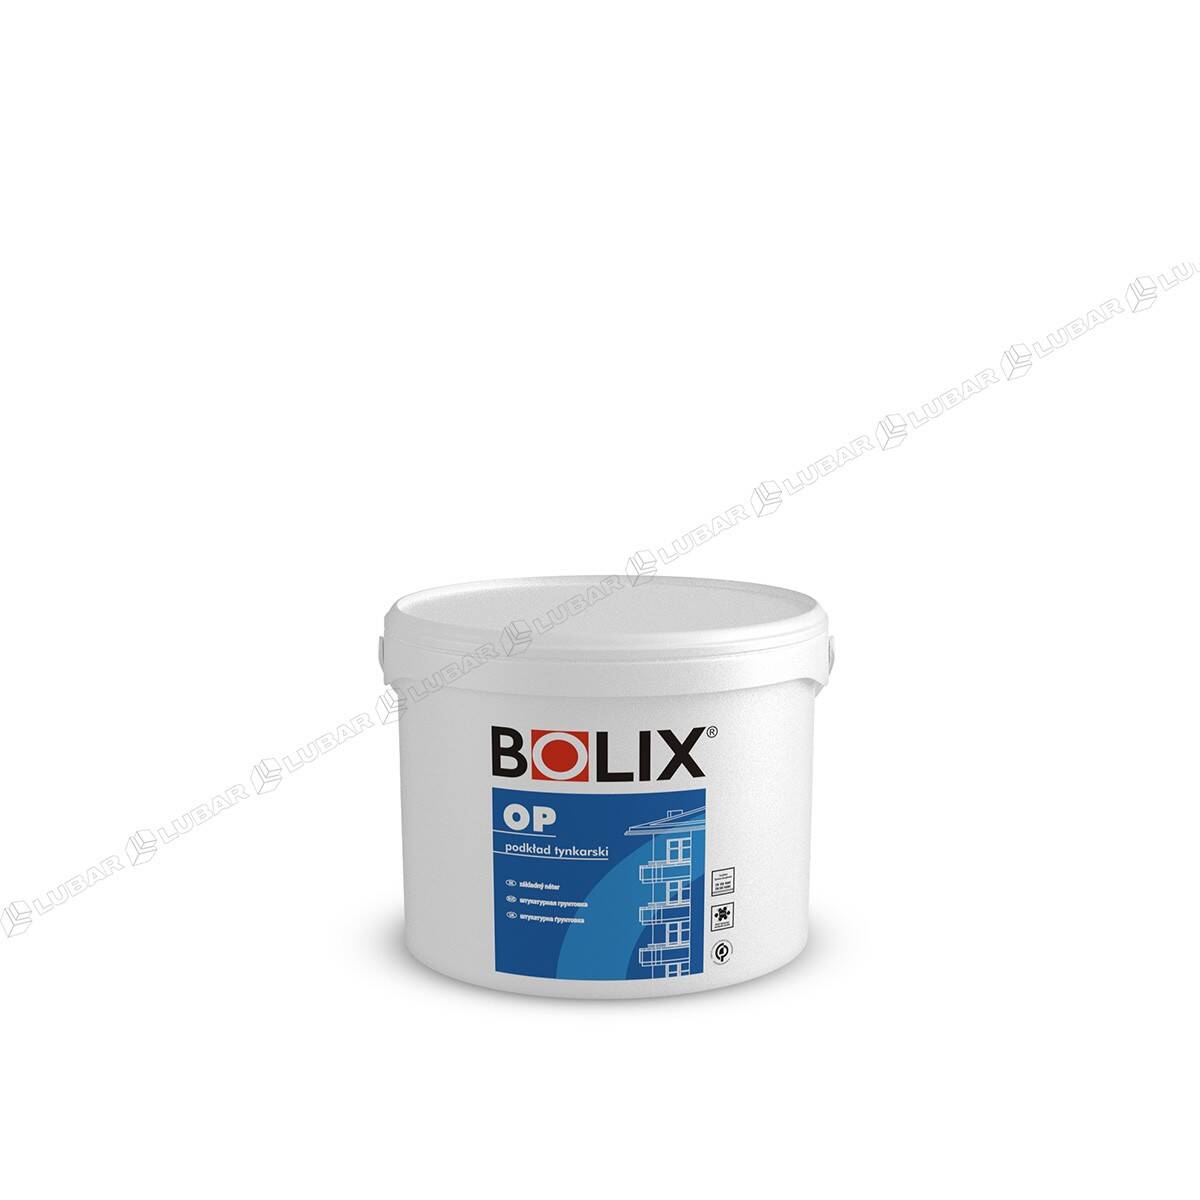 BOLIX OP Podkład tynkarski pod cienkowarstwowe tynki mineralne, akrylowe i dekoracyjne 5kg